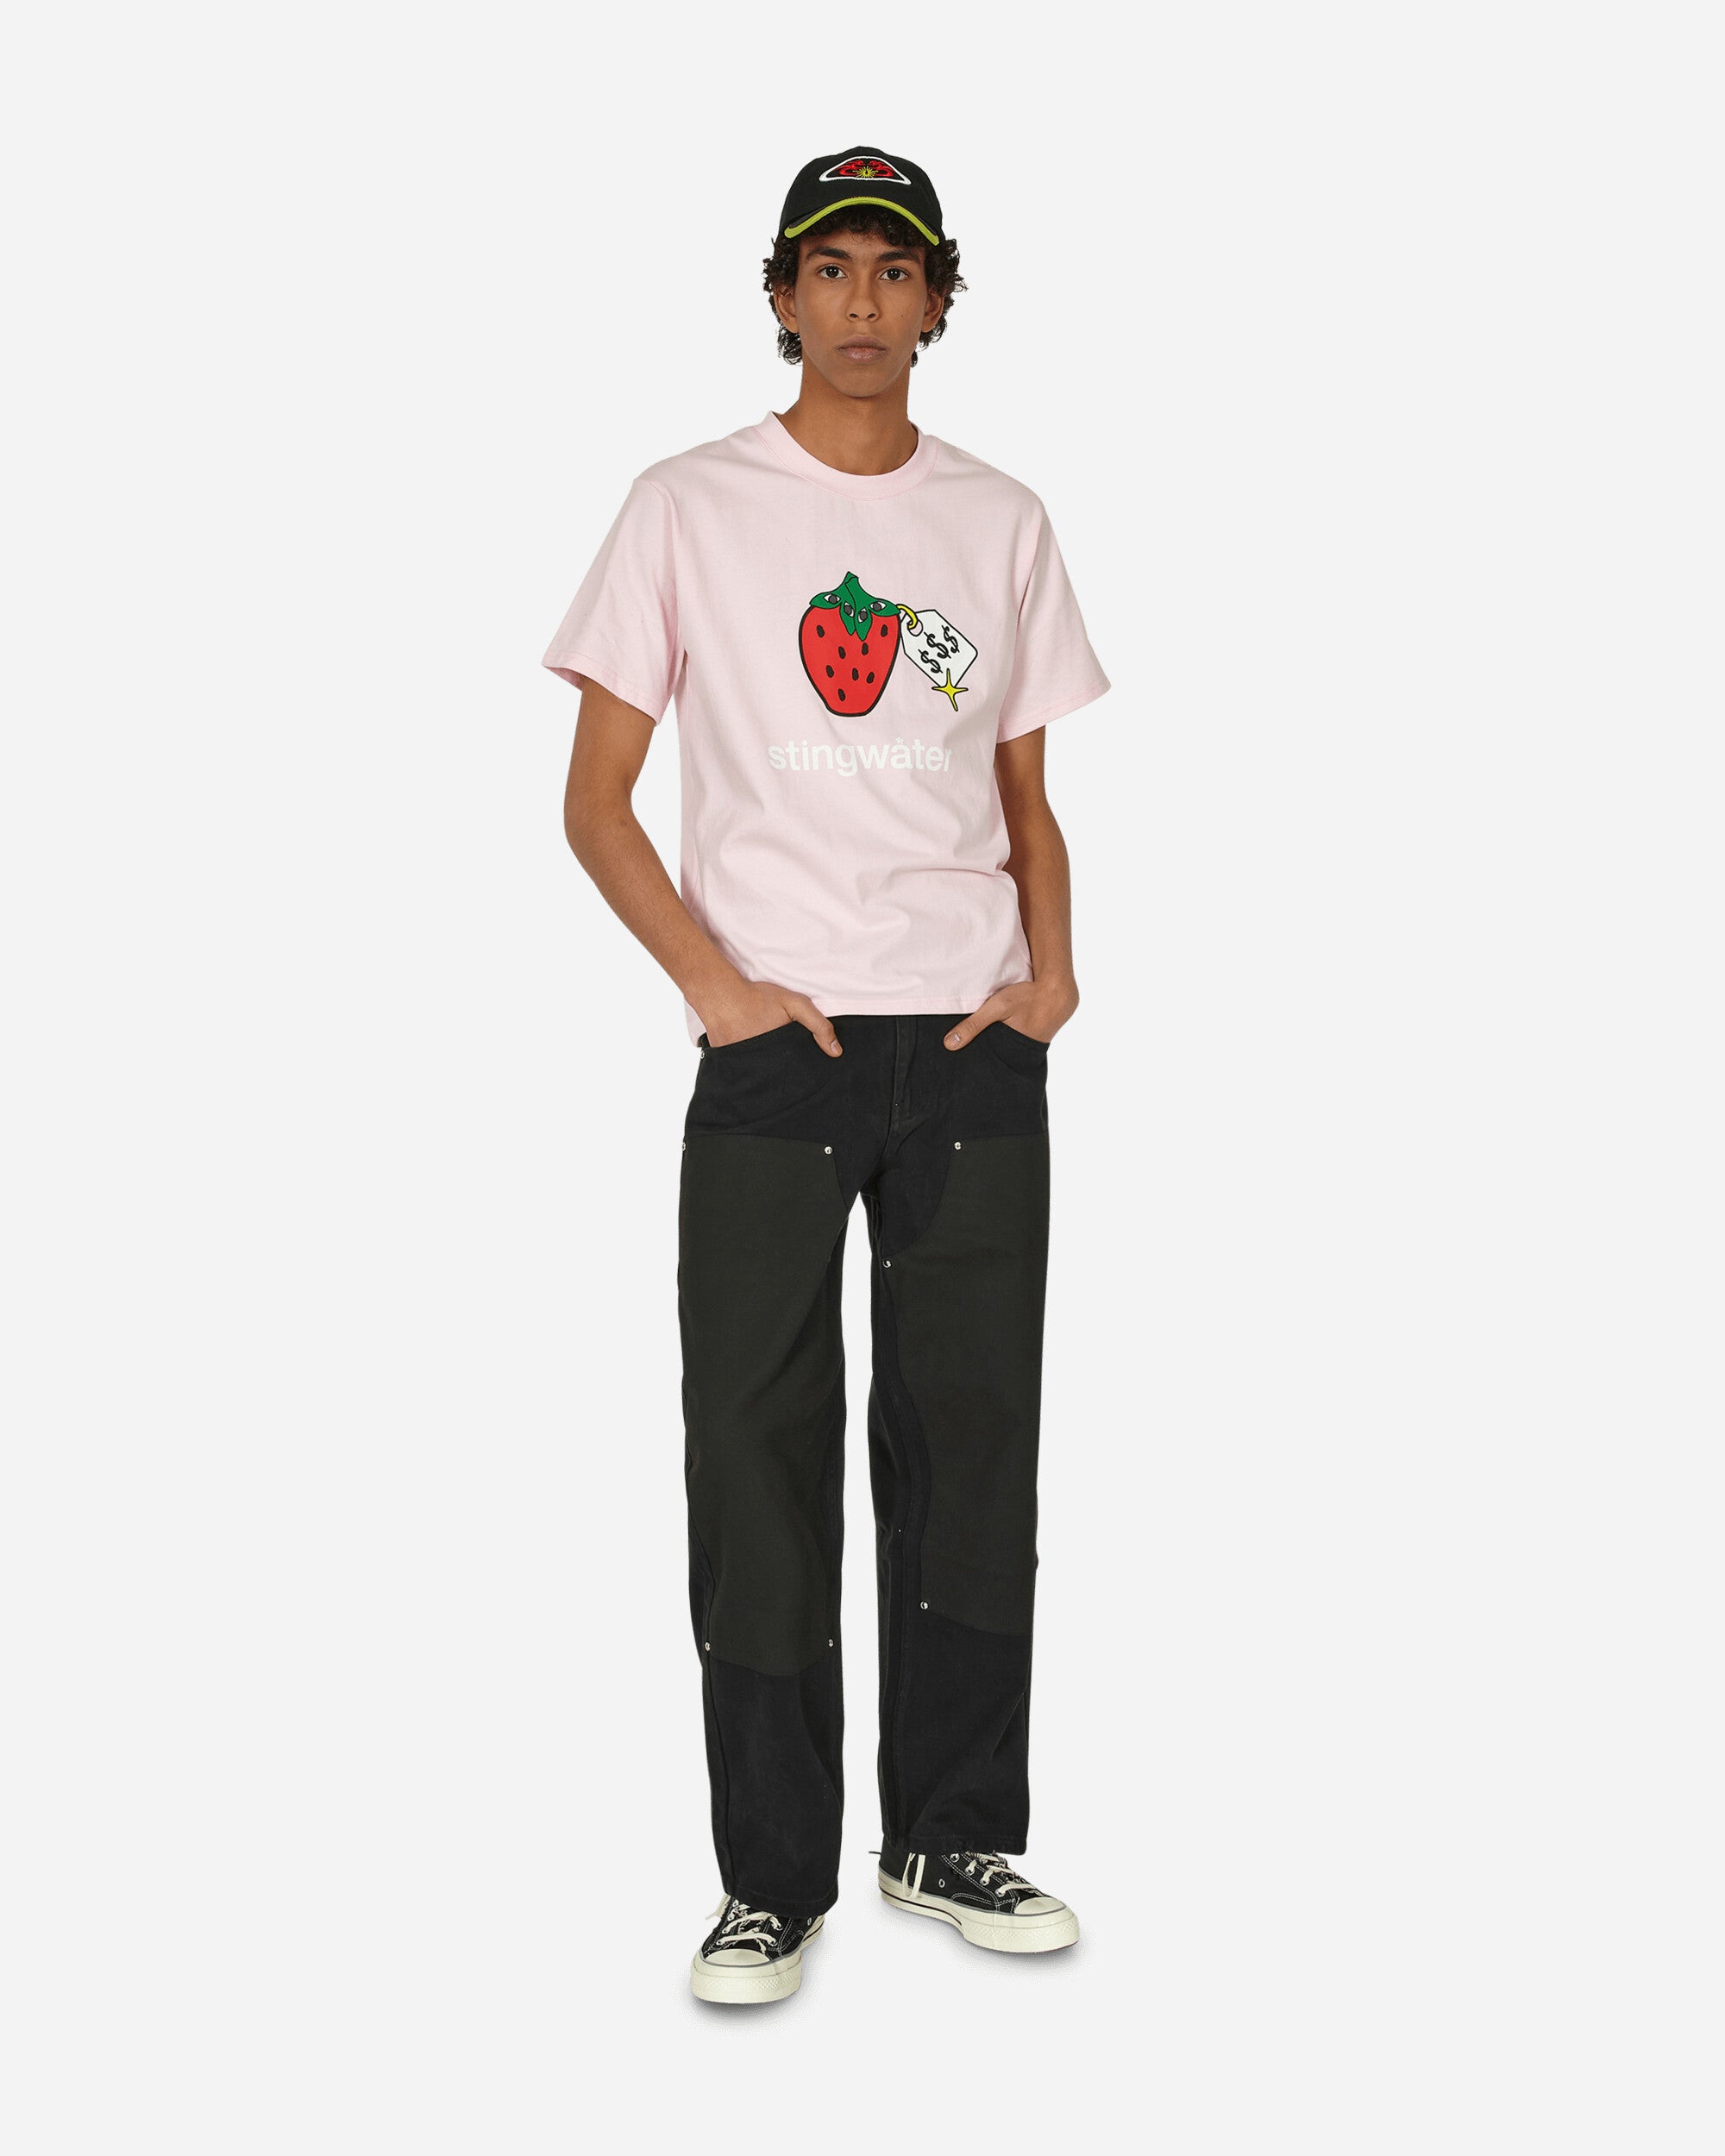 Stingwater V Speshal Organic Strawberry T Shirt Pink T-Shirts Shortsleeve VSPESHTEE PINK